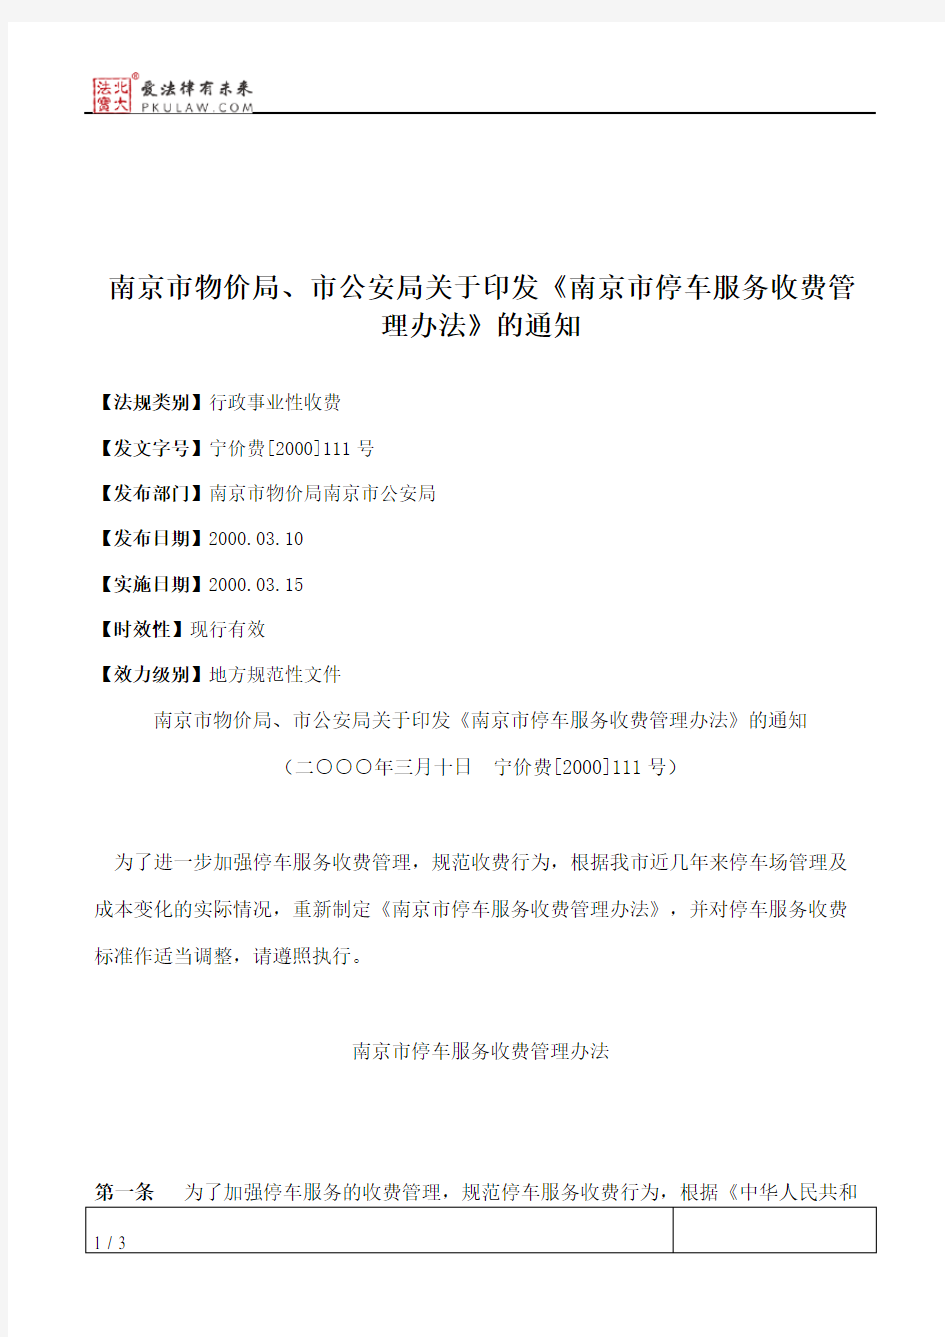 南京市物价局、市公安局关于印发《南京市停车服务收费管理办法》的通知